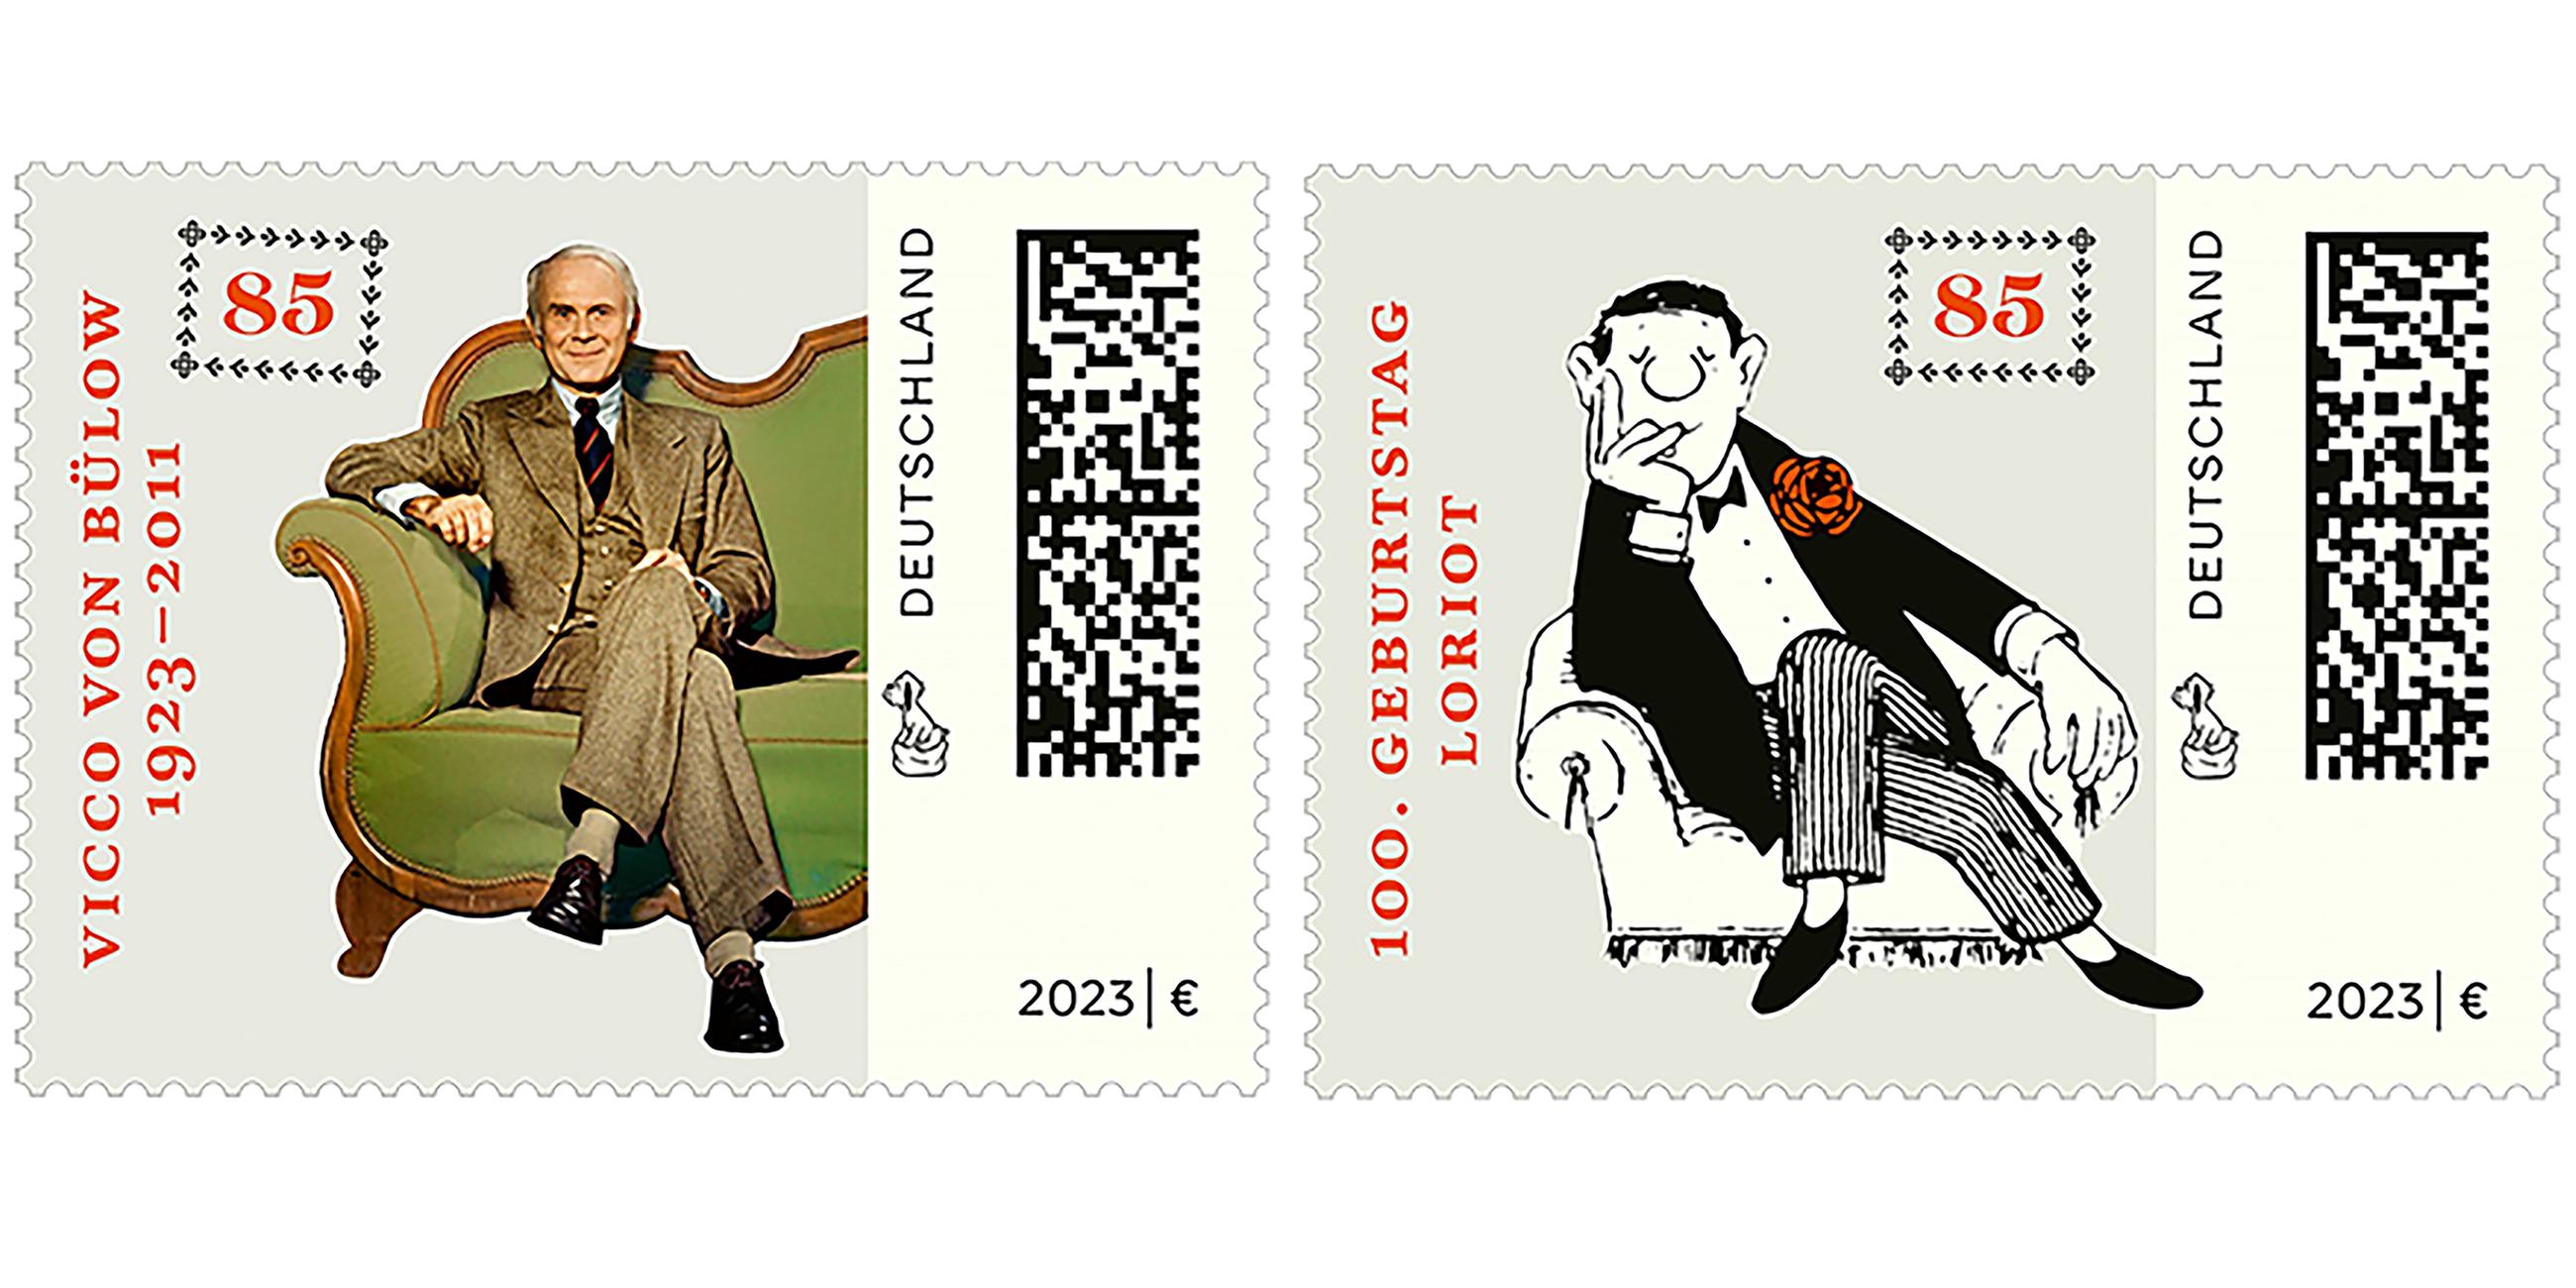 Zu seinem 100. Geburtstag wird das Bundesfinanzministerium den Schauspieler, Humoristen und Karikaturisten Loriot (1923-2011) mit zwei Sonderbriefmarken ehren.